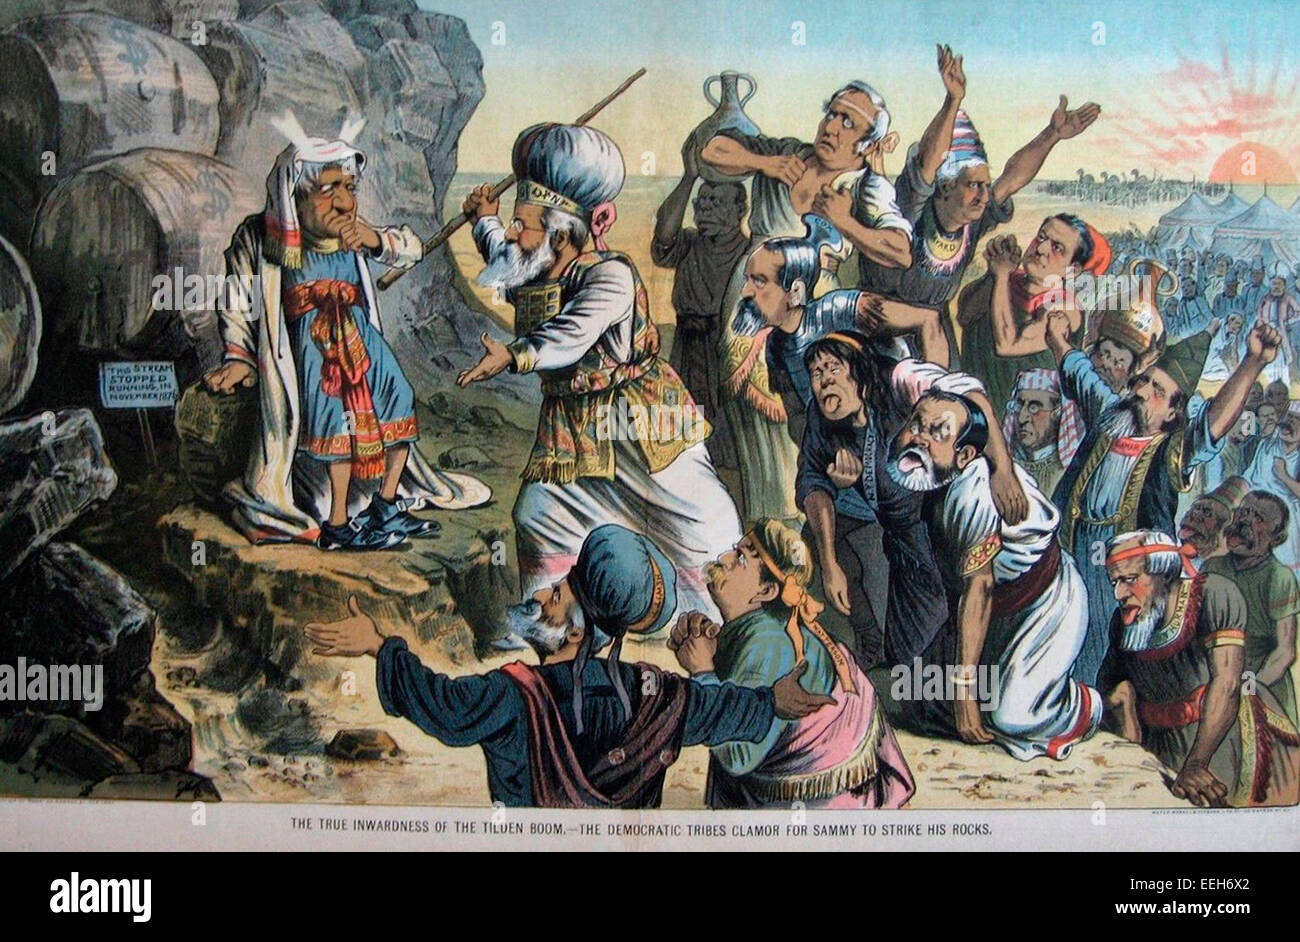 La véritable intériorité de la flèche - l'Tilden tribus démocratiques se pressent pour Sammy à frapper sa rochers, Caricature politique, vers 1884 Banque D'Images